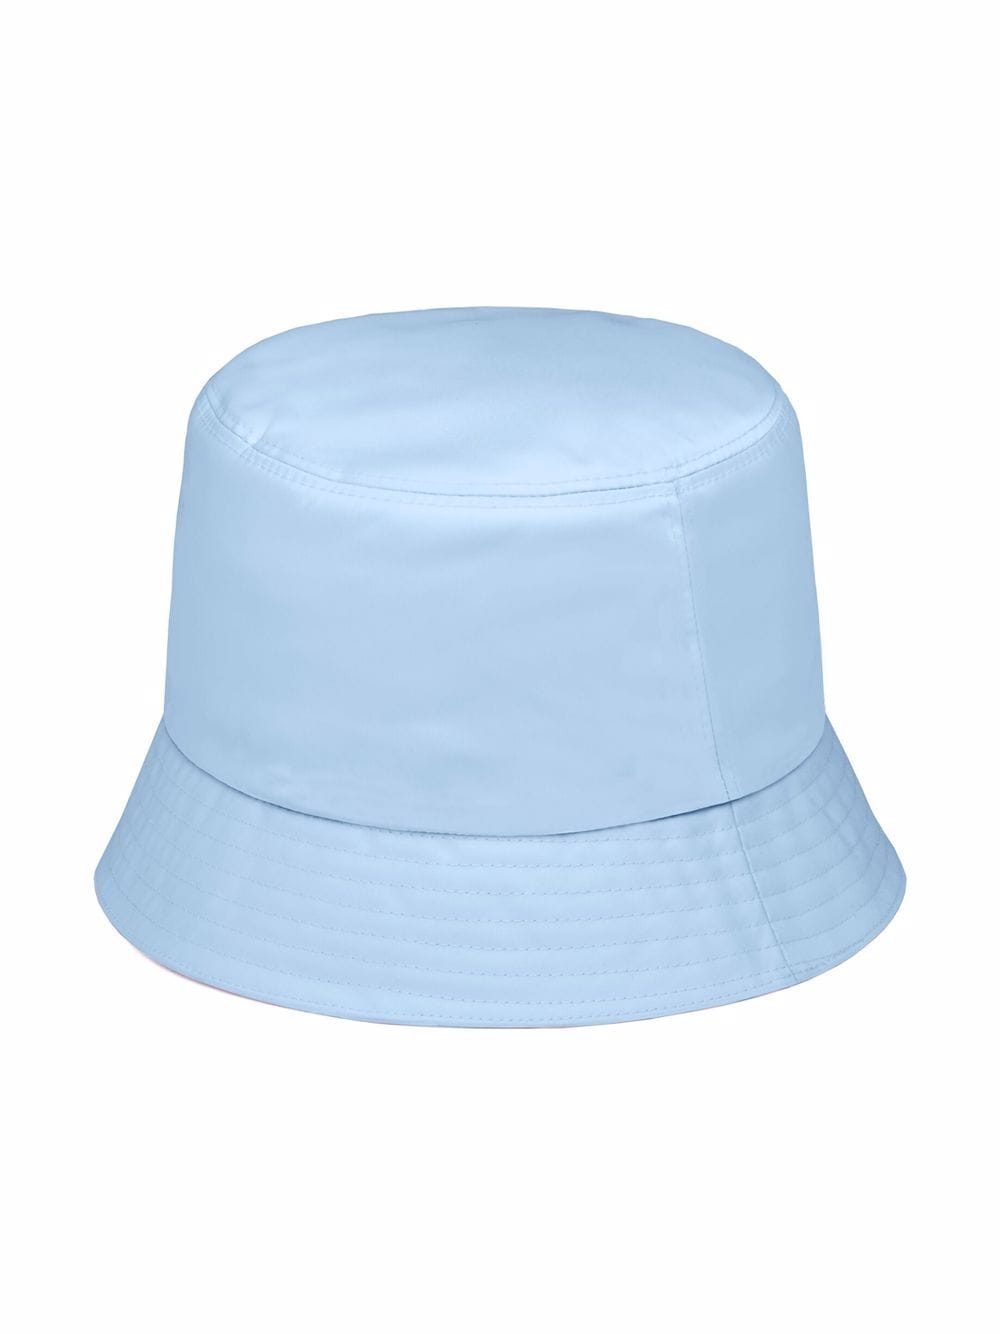 Prada Leather Bucket Hat - Farfetch